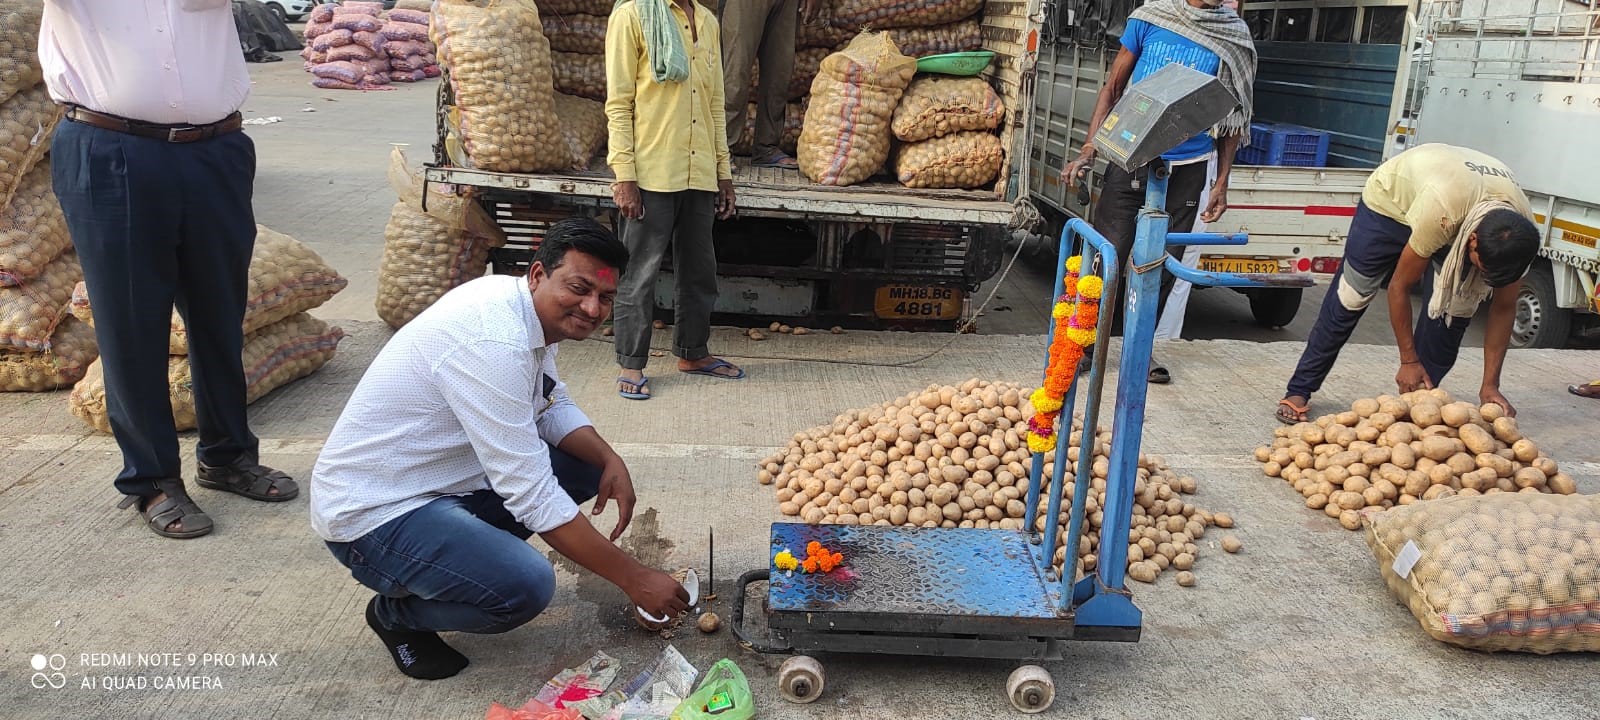 India potato markets